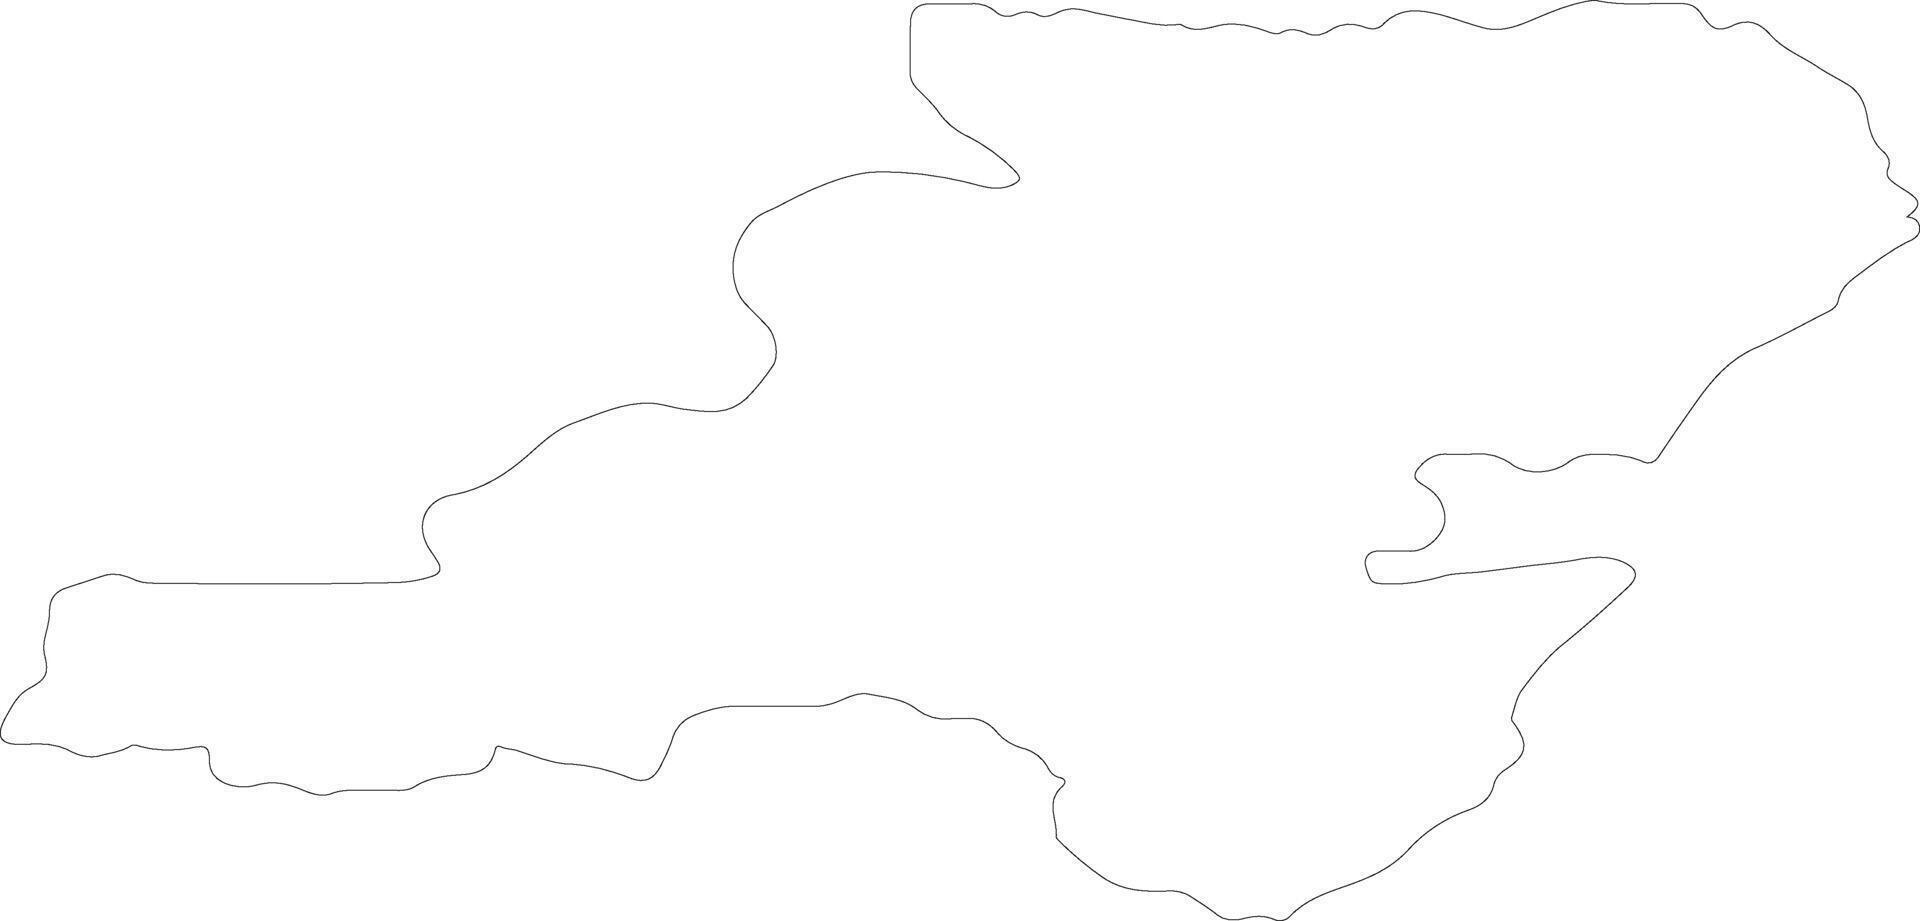 aberdeenshire Verenigde koninkrijk schets kaart vector